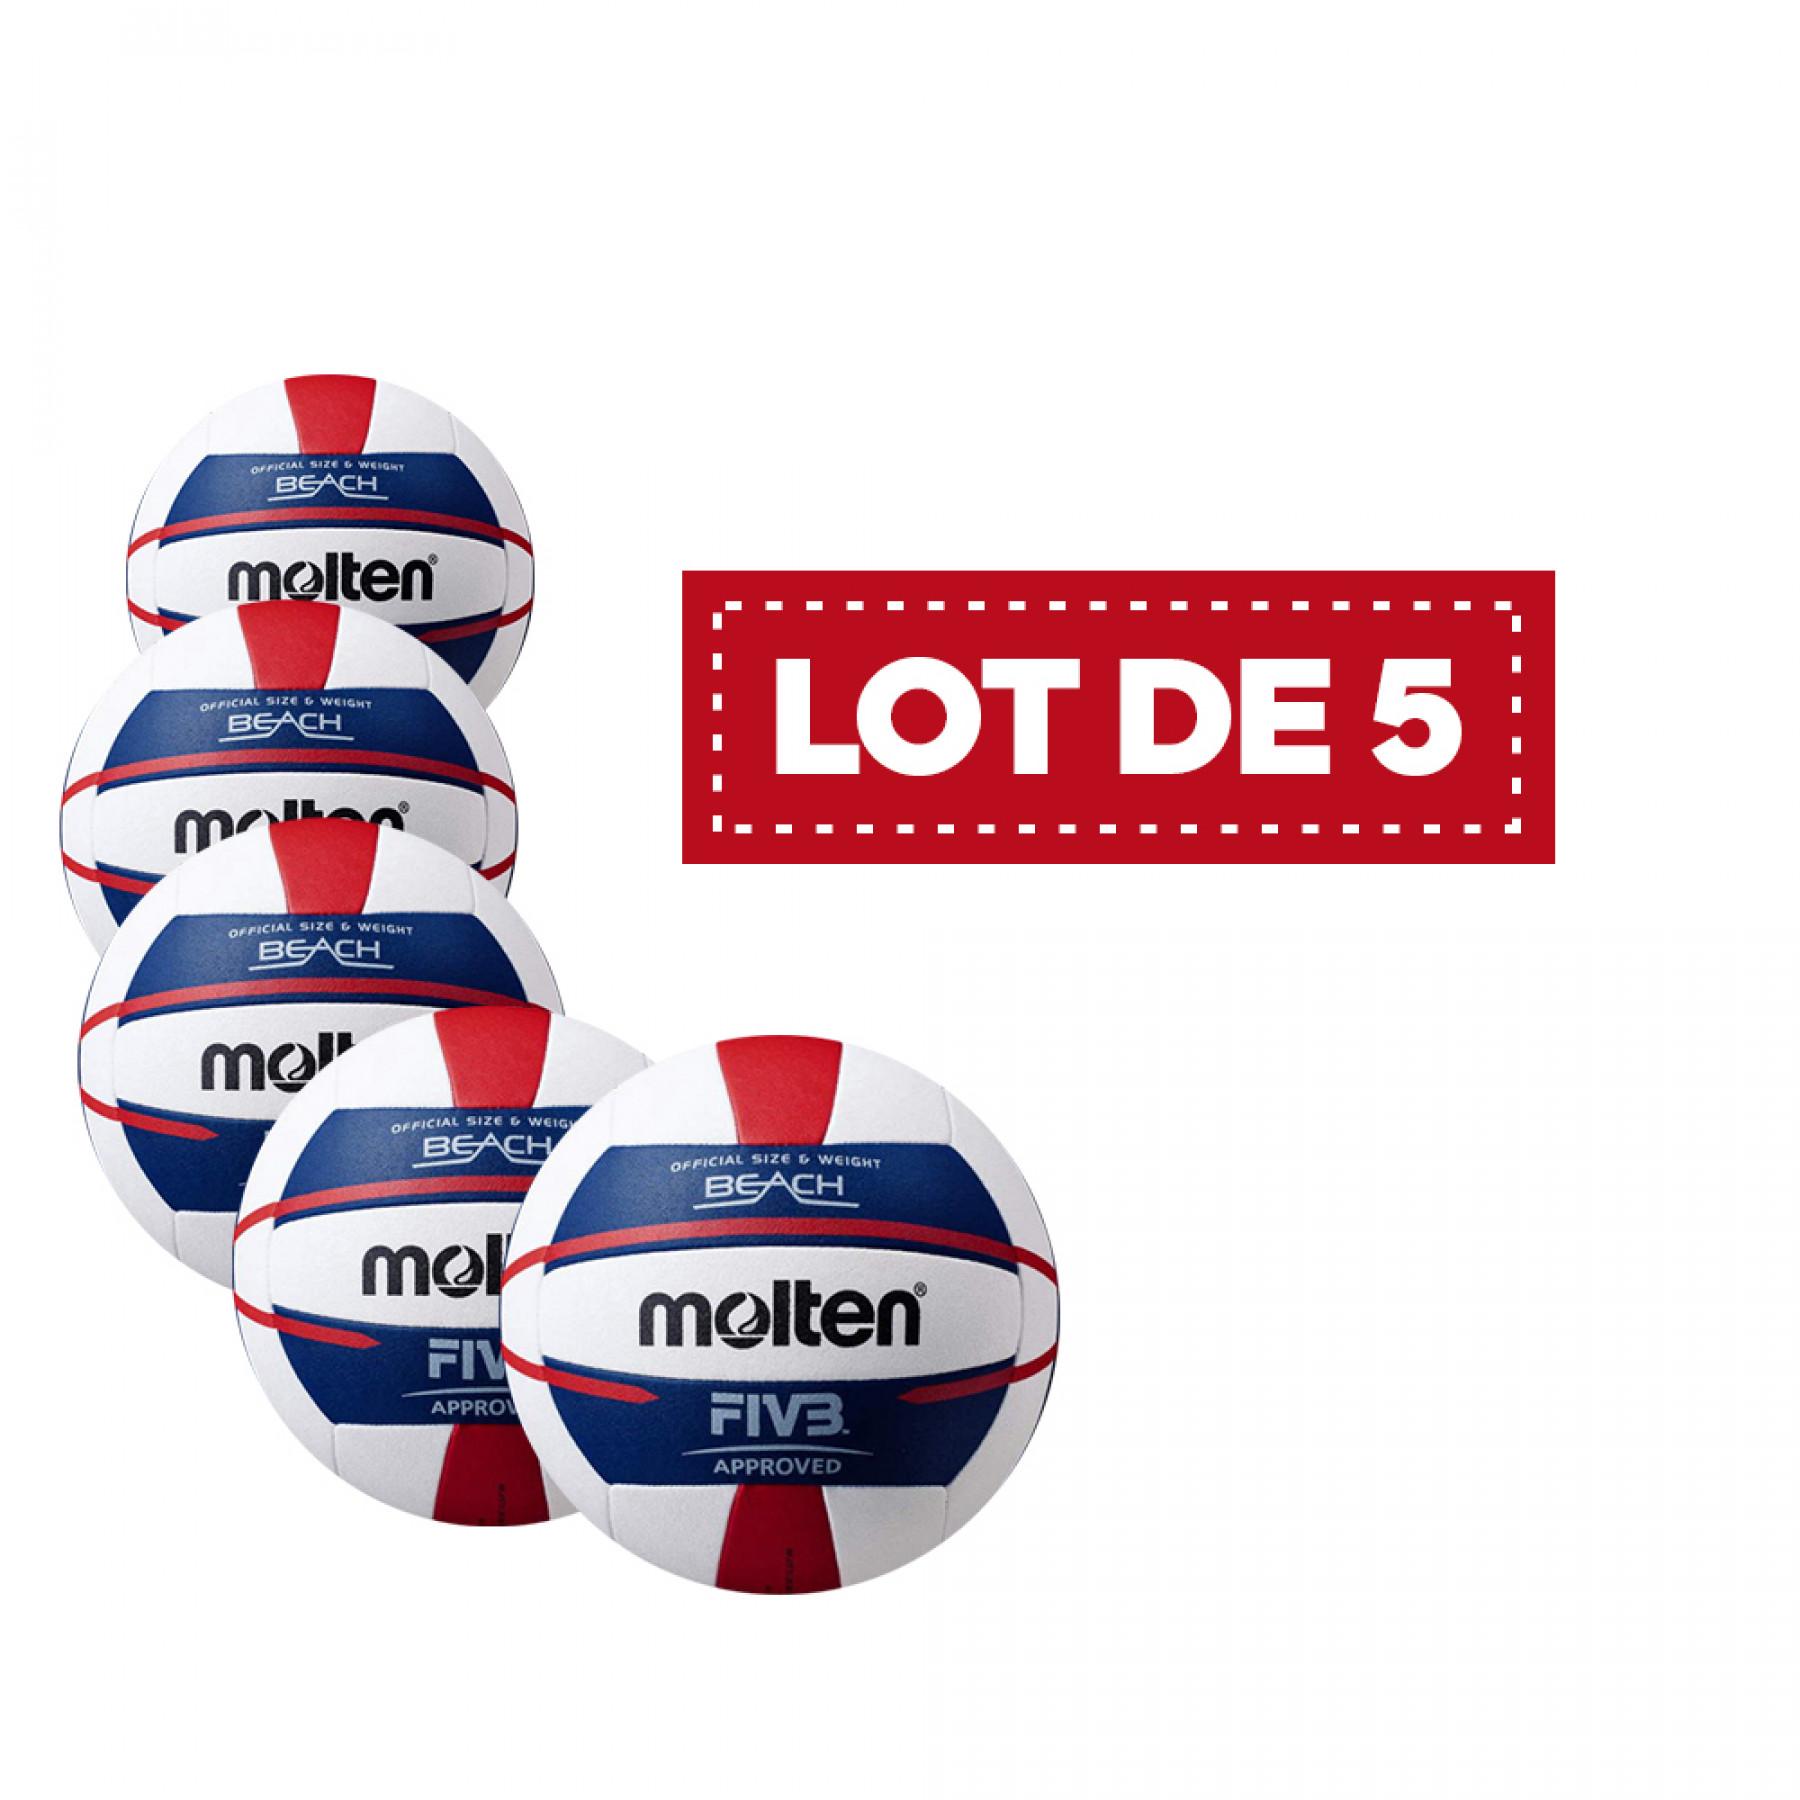 Lot de 5 Ballons femme Beach-volley Molten V5b5000